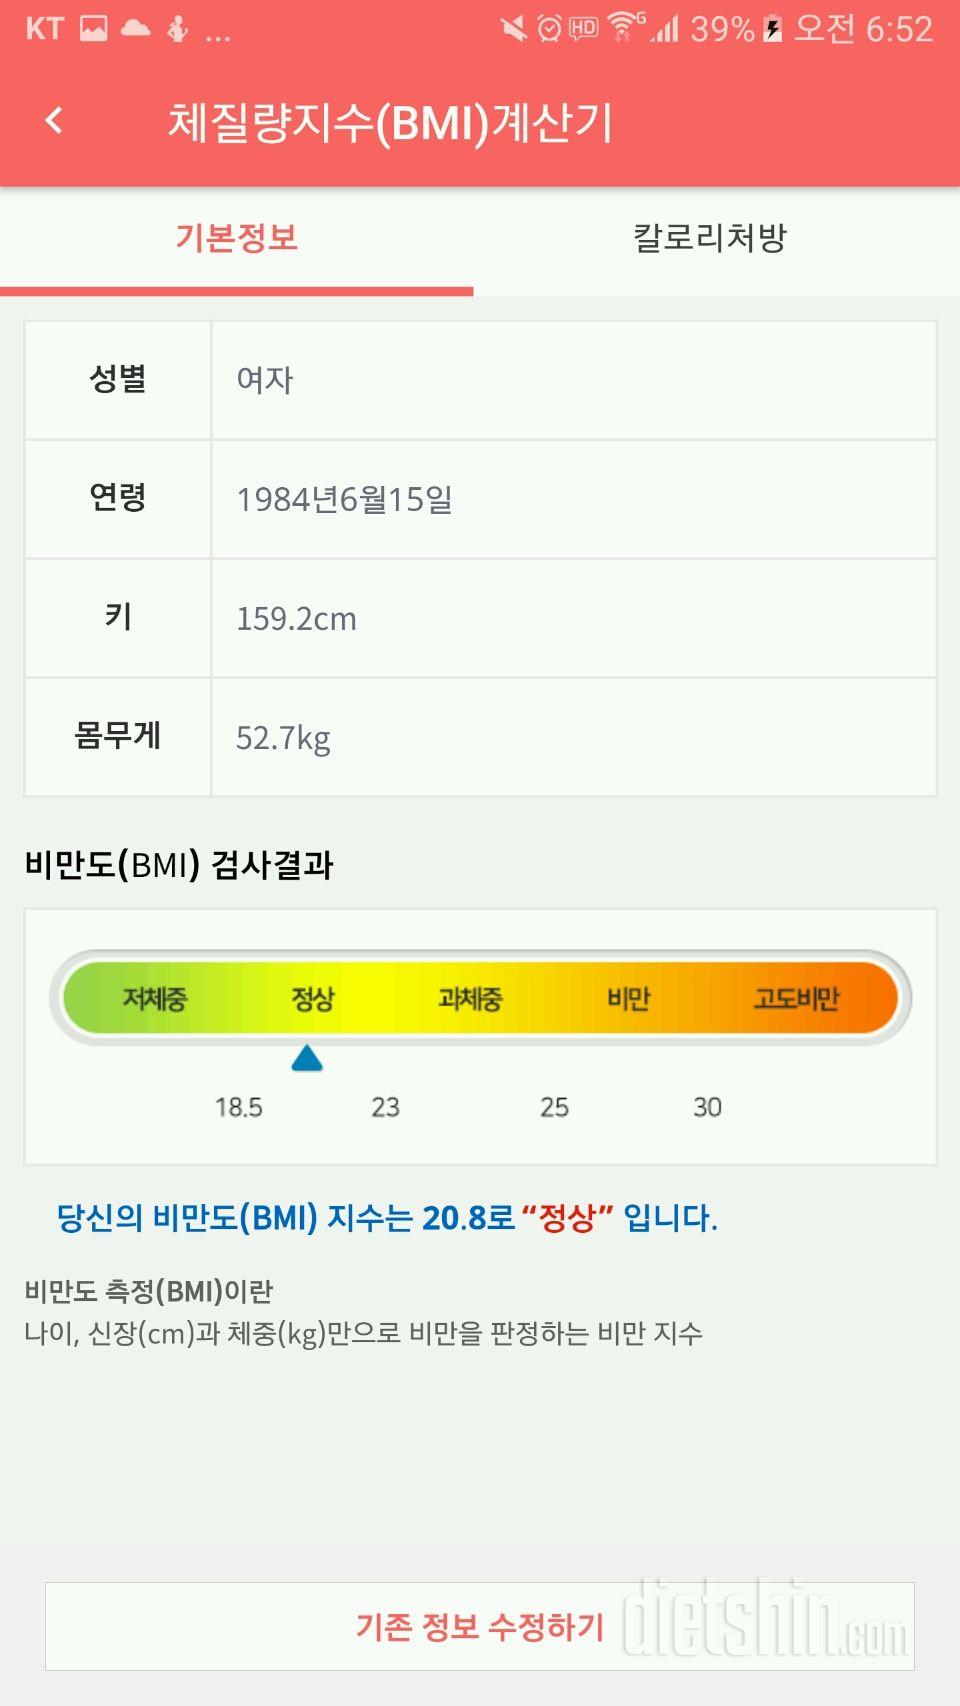 11자 복근으로 7월에는 기분좋게 래쉬가드와 쇼트를!!! ^^